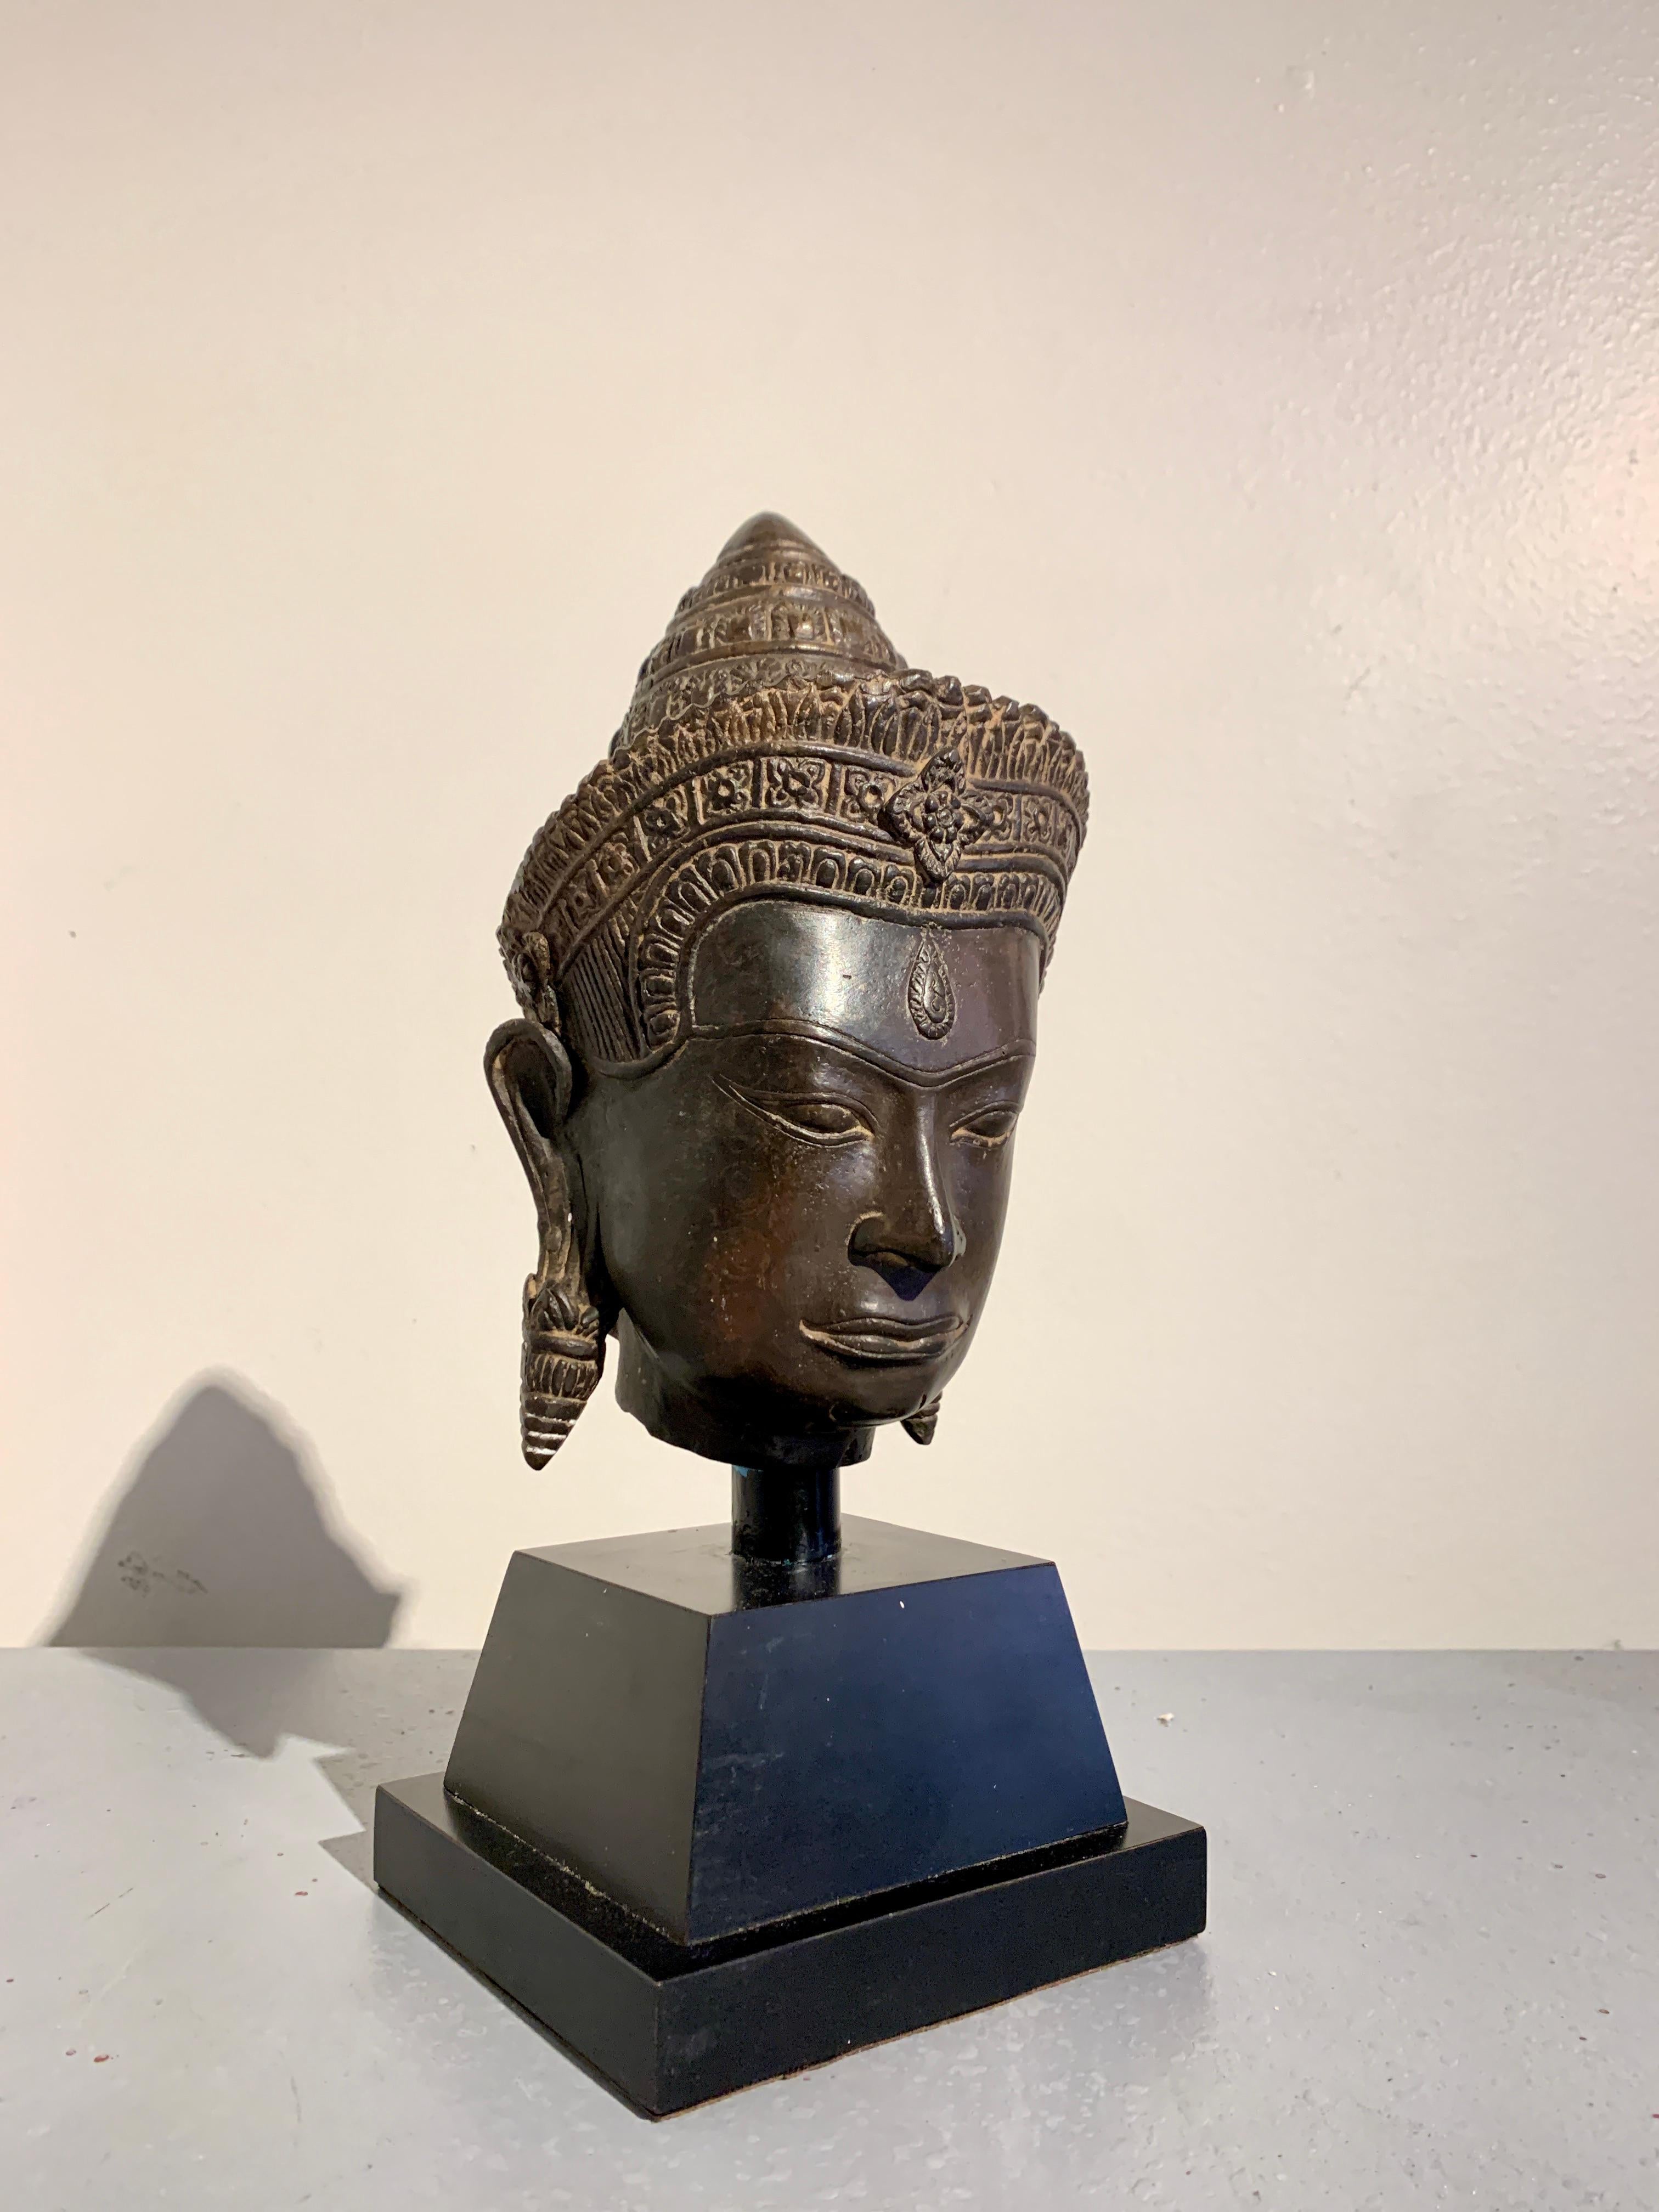 Ein gut gegossener Vintage Khmer, Angkor Wat Stil, Bronze Kopf von Shiva, ca. 1970's, Thailand.

Shiva, der hinduistische Gott der Schöpfung, des Wandels und der Zerstörung, ist an dem dritten Auge in der Mitte seiner Stirn zu erkennen. Sein stark